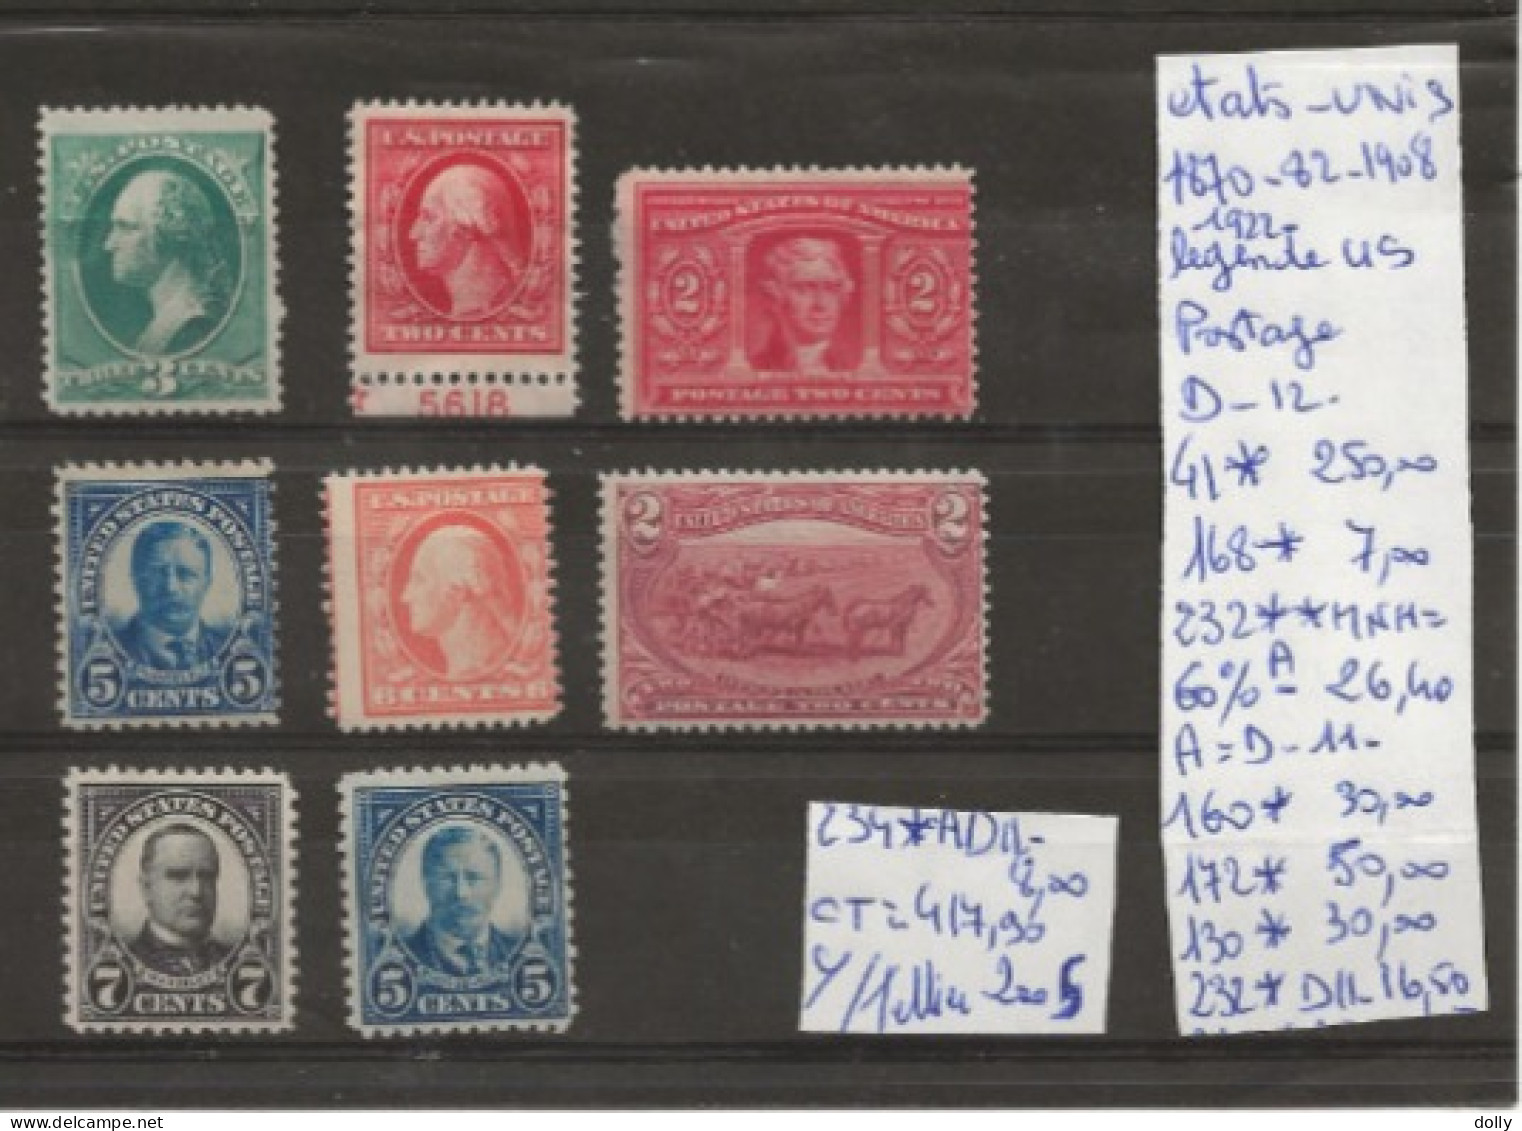 TIMBRES DES ETATS-UNIS NEUF**MNH 1870-82 Nr VOIR SUR PAPIER AVEC TIMBRES COTE 417.90 € - Unused Stamps